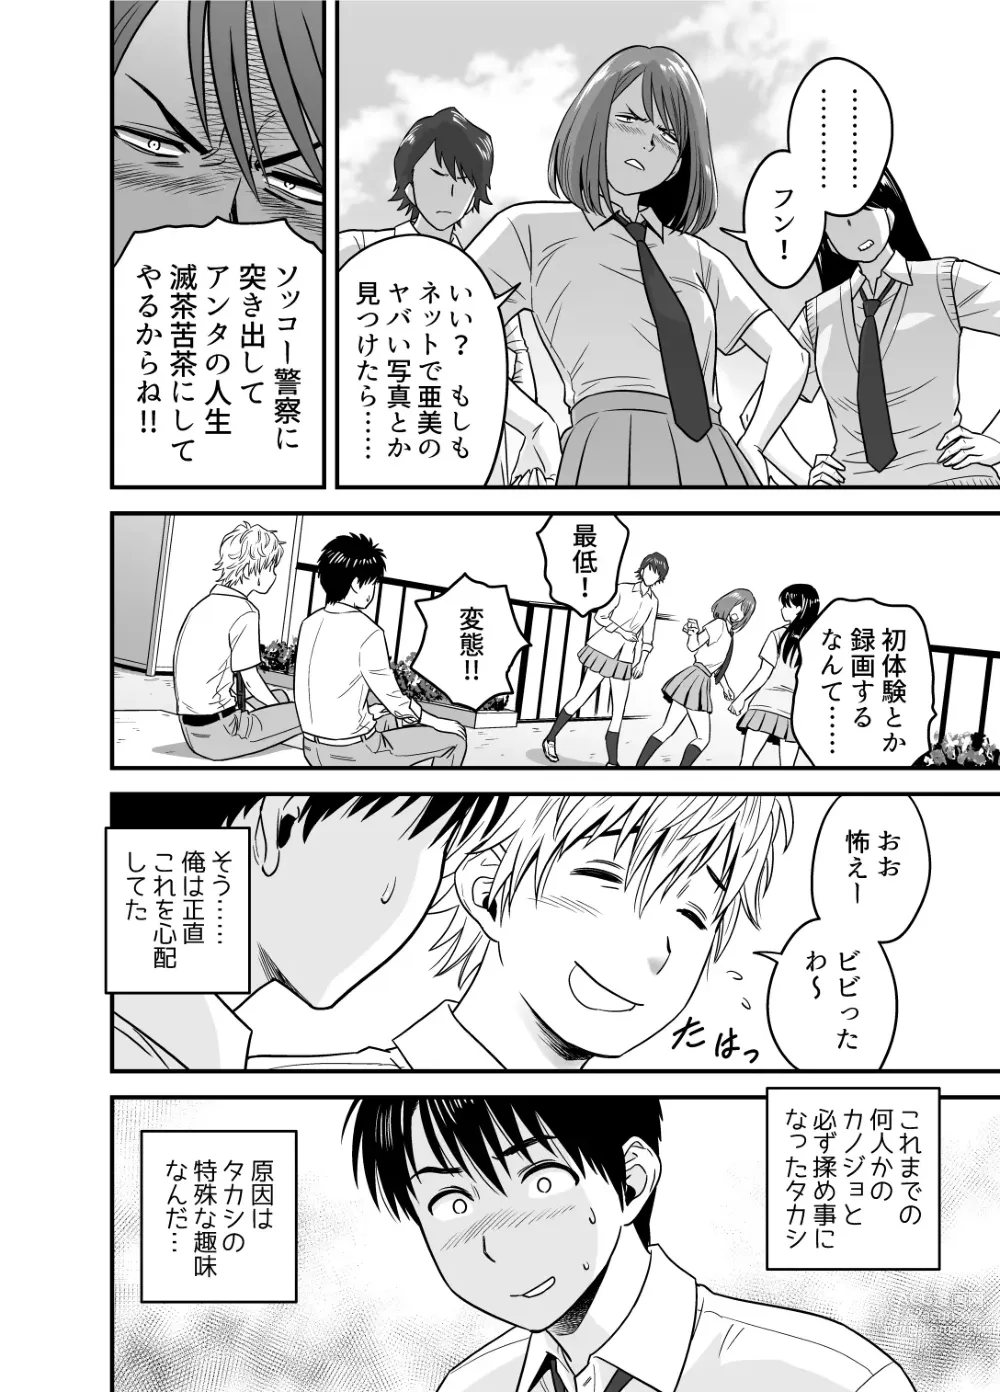 Page 22 of doujinshi Haha ga TomoKano ni Natta node